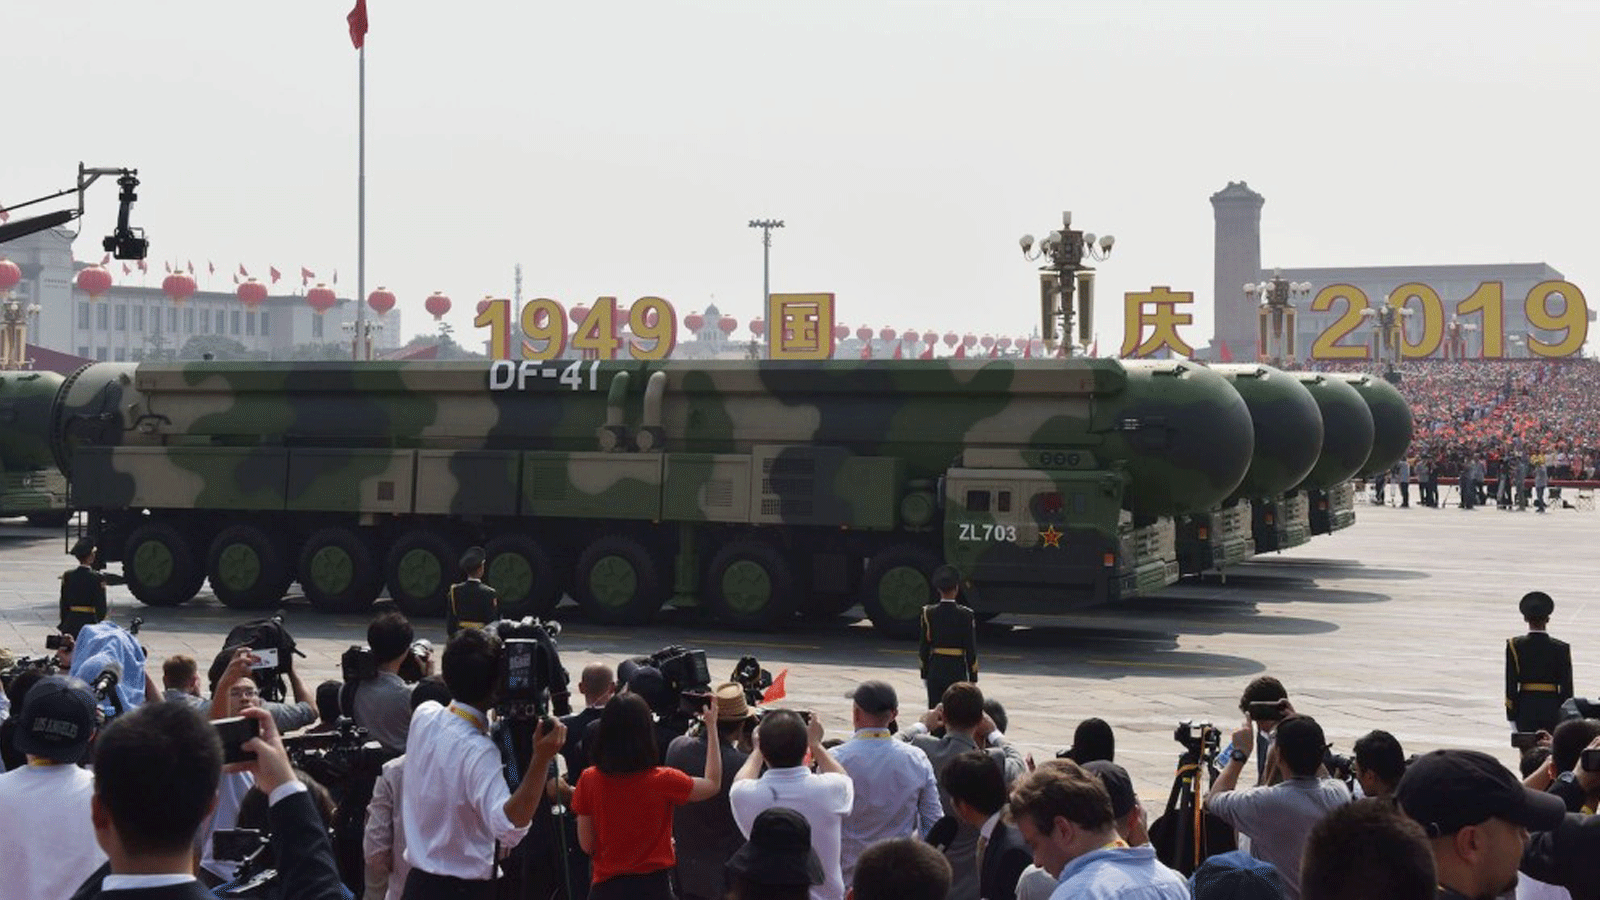 المركبات العسكرية تحمل صواريخ باليستية عابرة للقارات ذات قدرة نووية من طراز DF-41 في عرض عسكري في ميدان تيانانمين في بكين في الأول من أكتوبر / تشرين الأول 2019، بمناسبة الذكرى السبعين لتأسيس جمهورية الصين الشعبية.